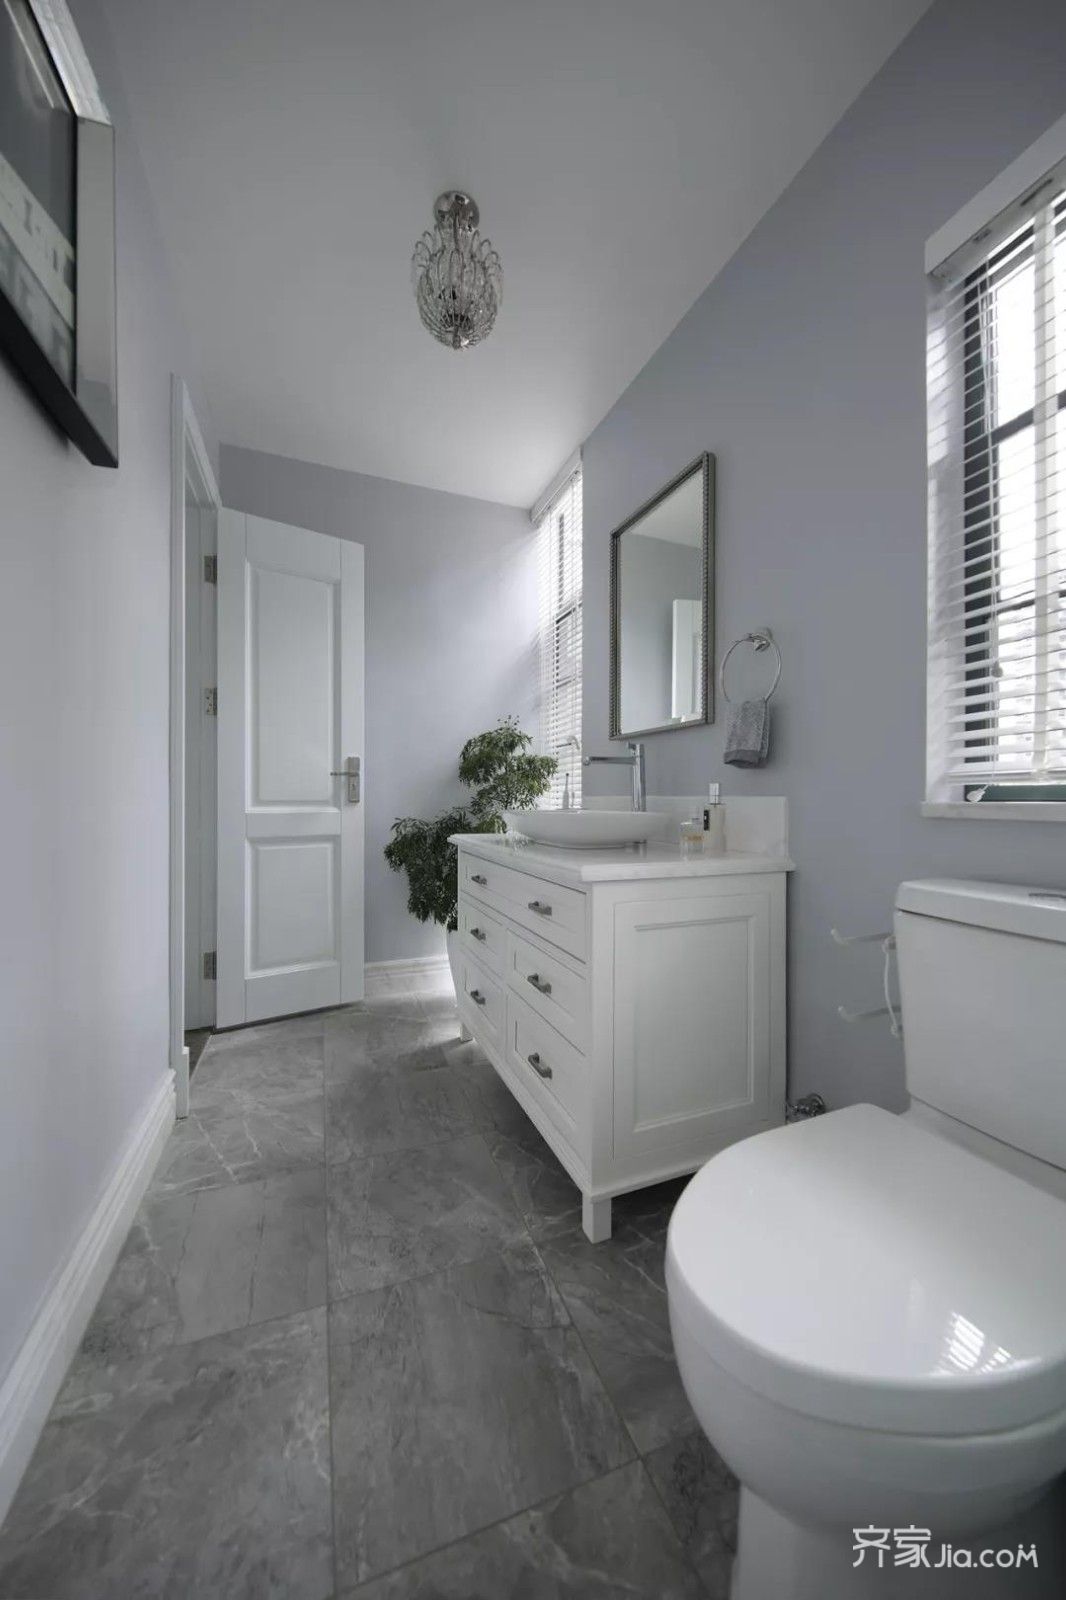 主卧卫生间以灰色地砖 雅白墙砖,浴缸区域是水磨图案的墙砖布置,为